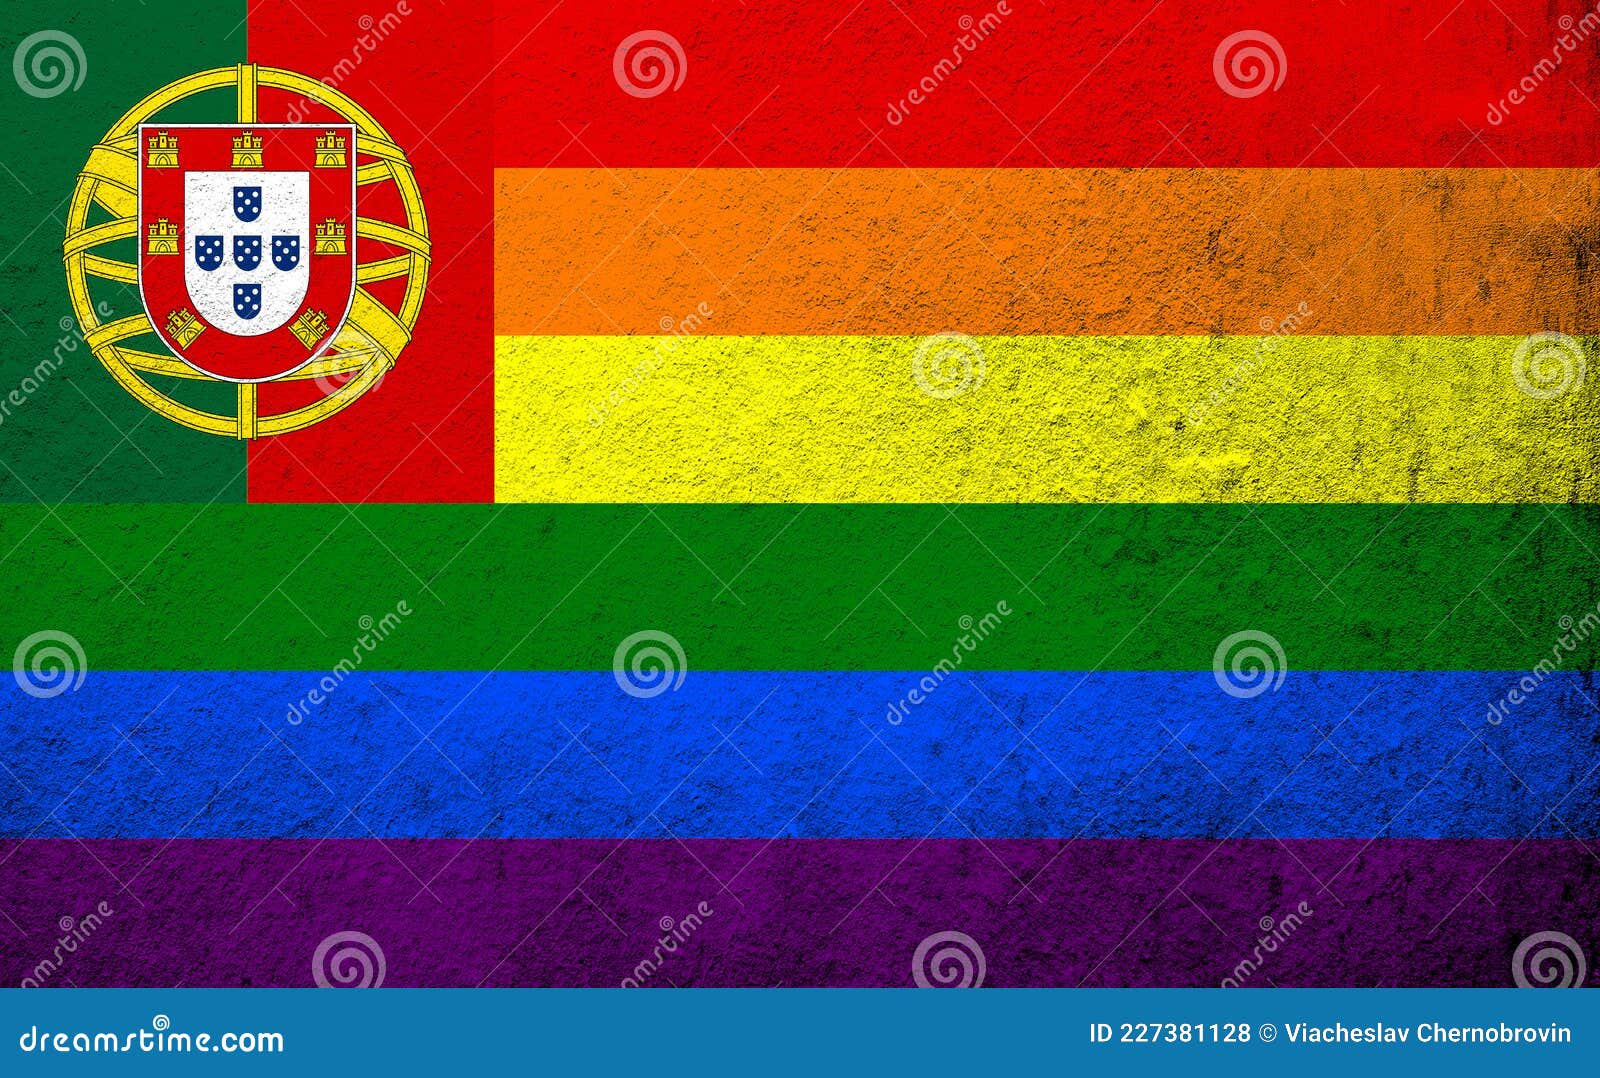 Portugal Rainbow LGBT Pride Flag. Stock Illustration Illustration of